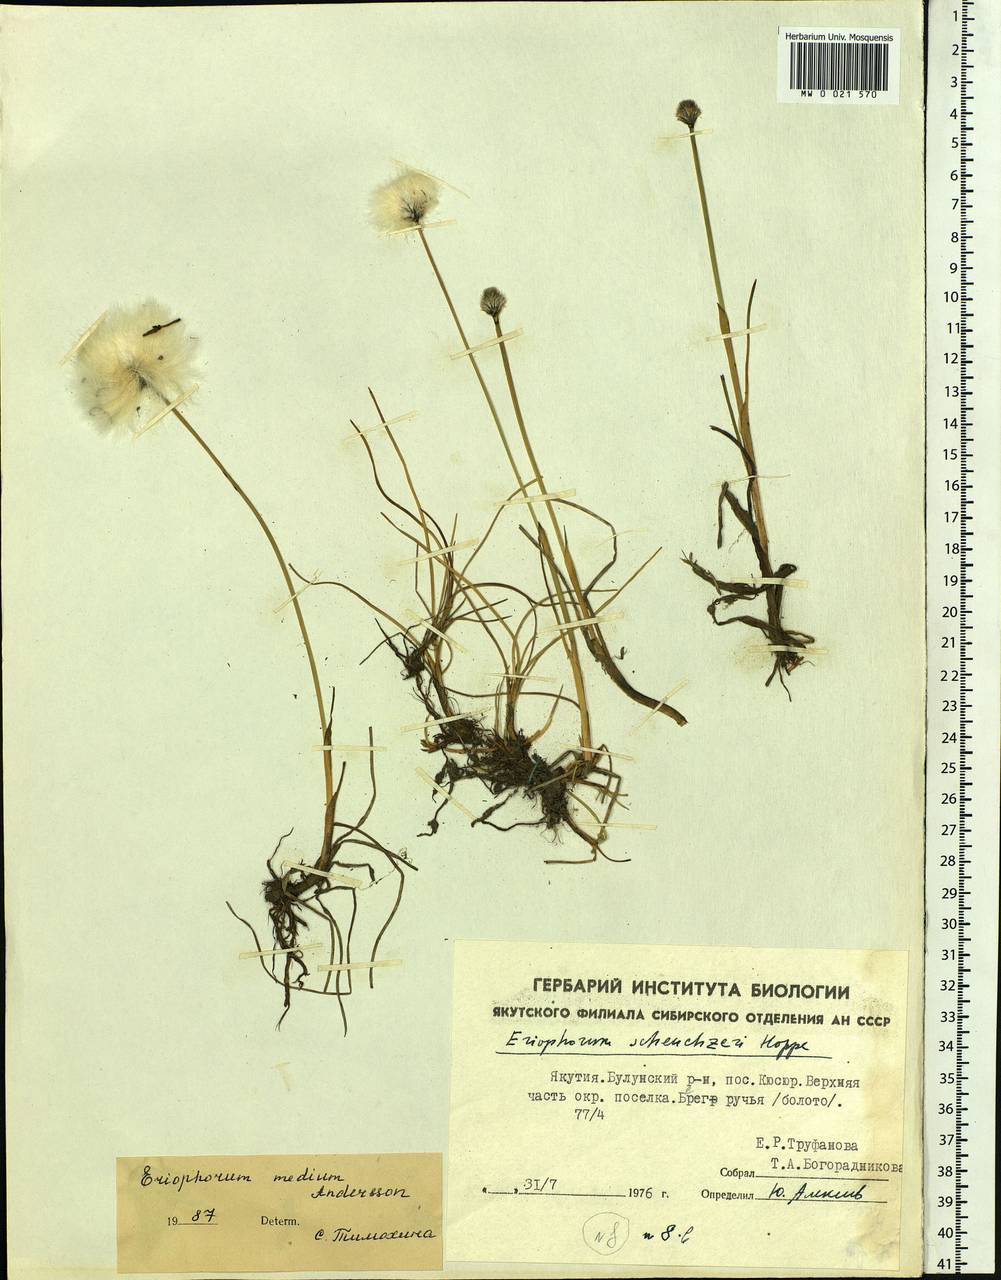 Eriophorum medium Andersson, Siberia, Yakutia (S5) (Russia)